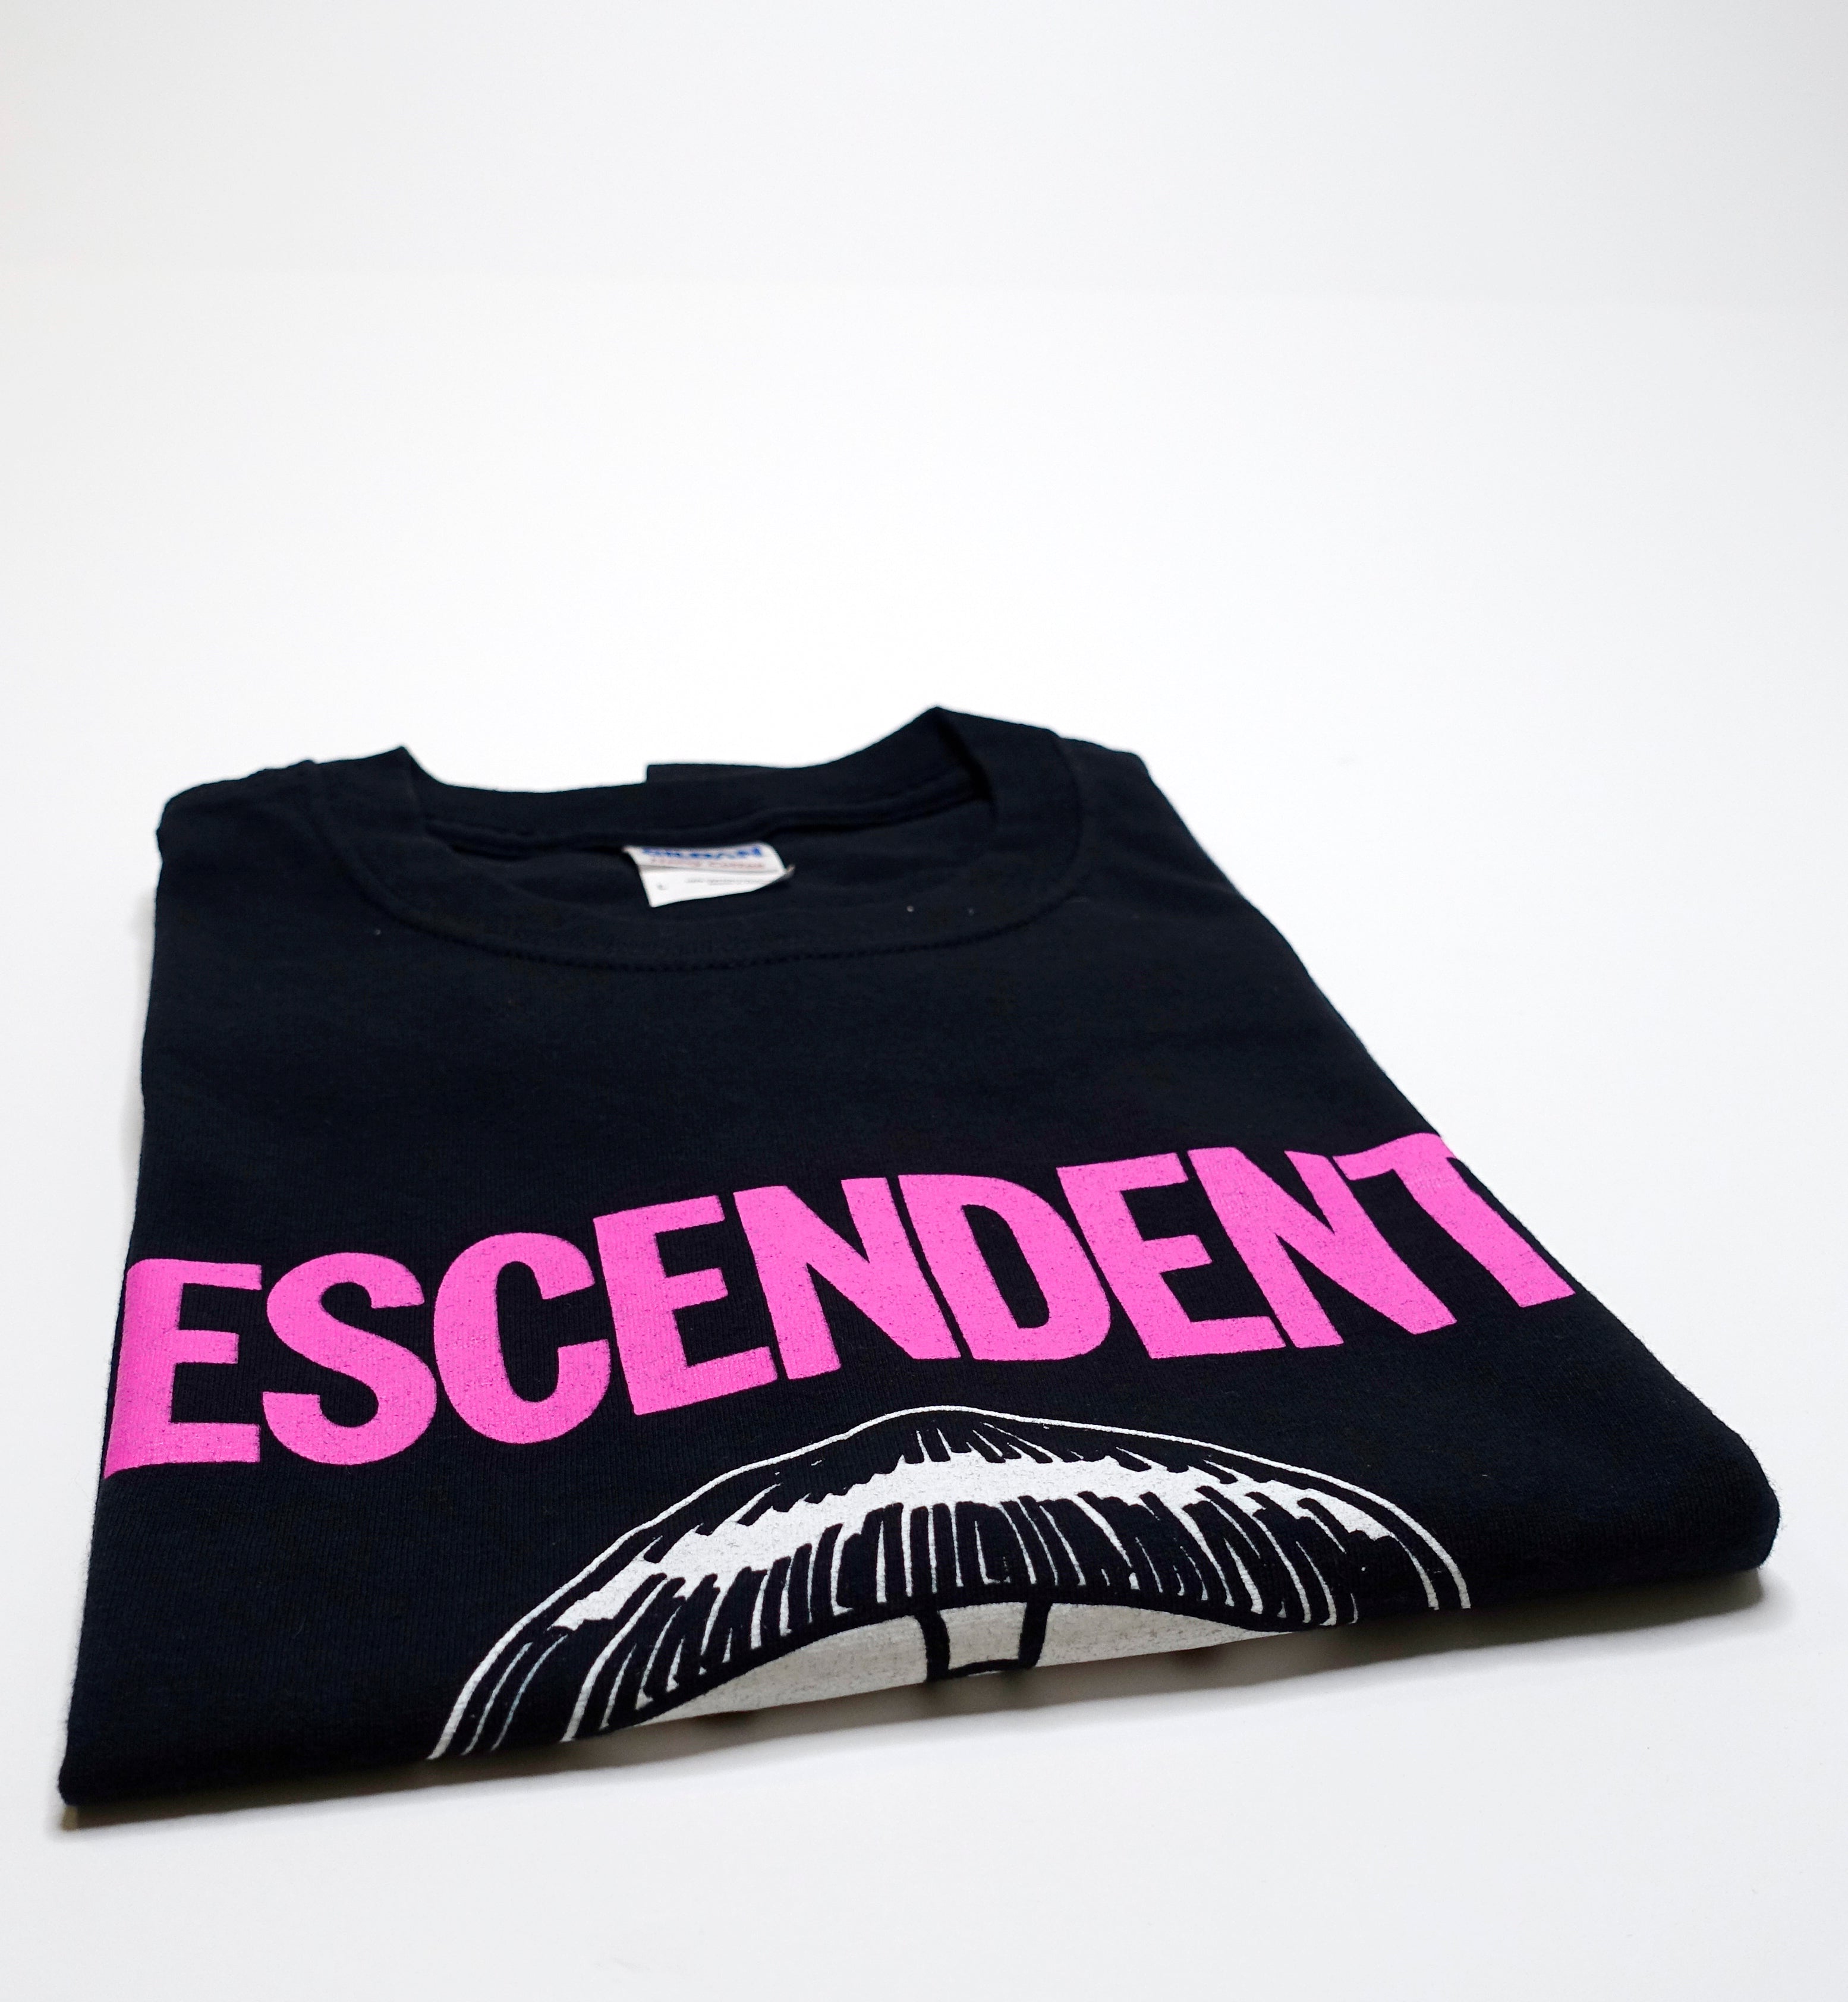 Descendents - New York Riot Fest 2012 Tour Shirt Size Large